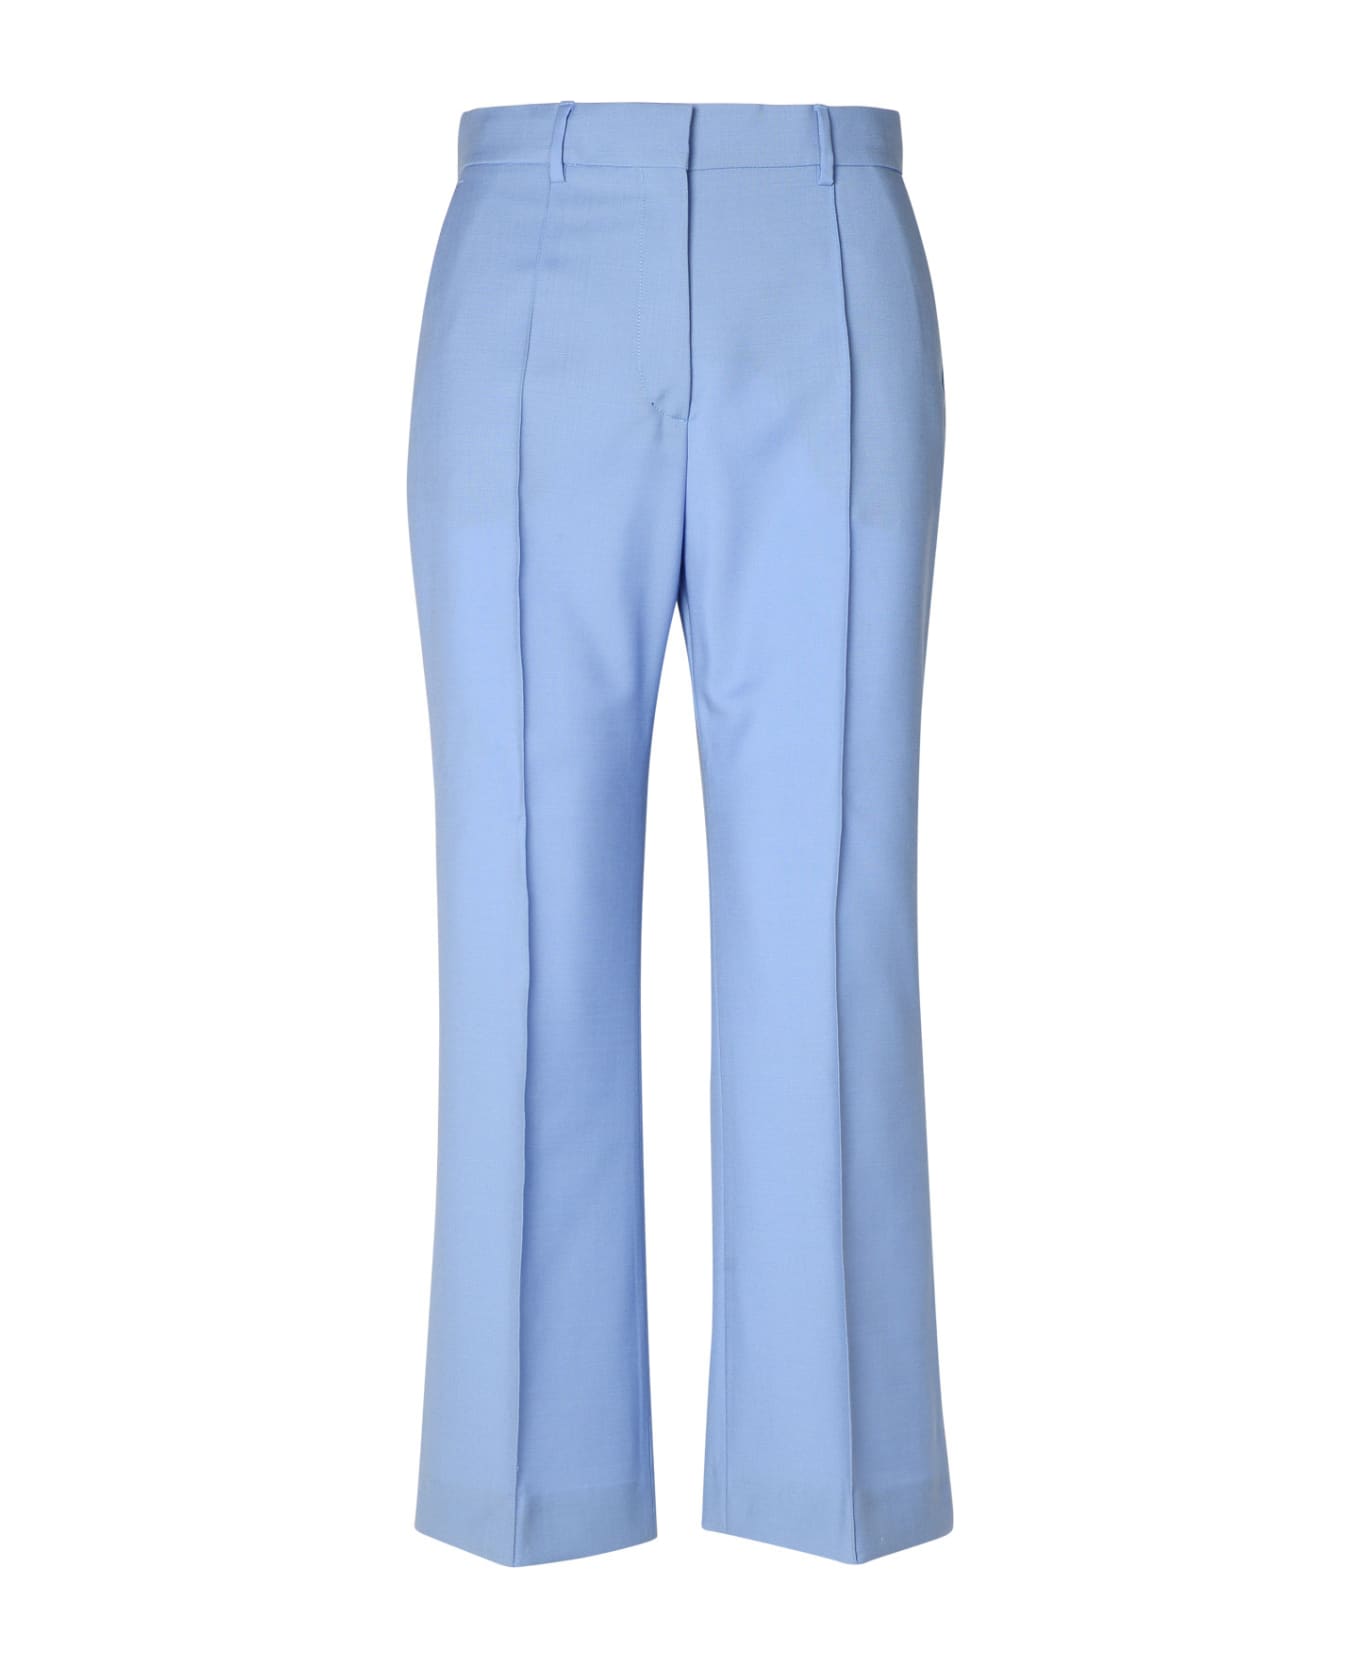 Lanvin Light Blue Virgin Wool Trousers - Light Blue ボトムス